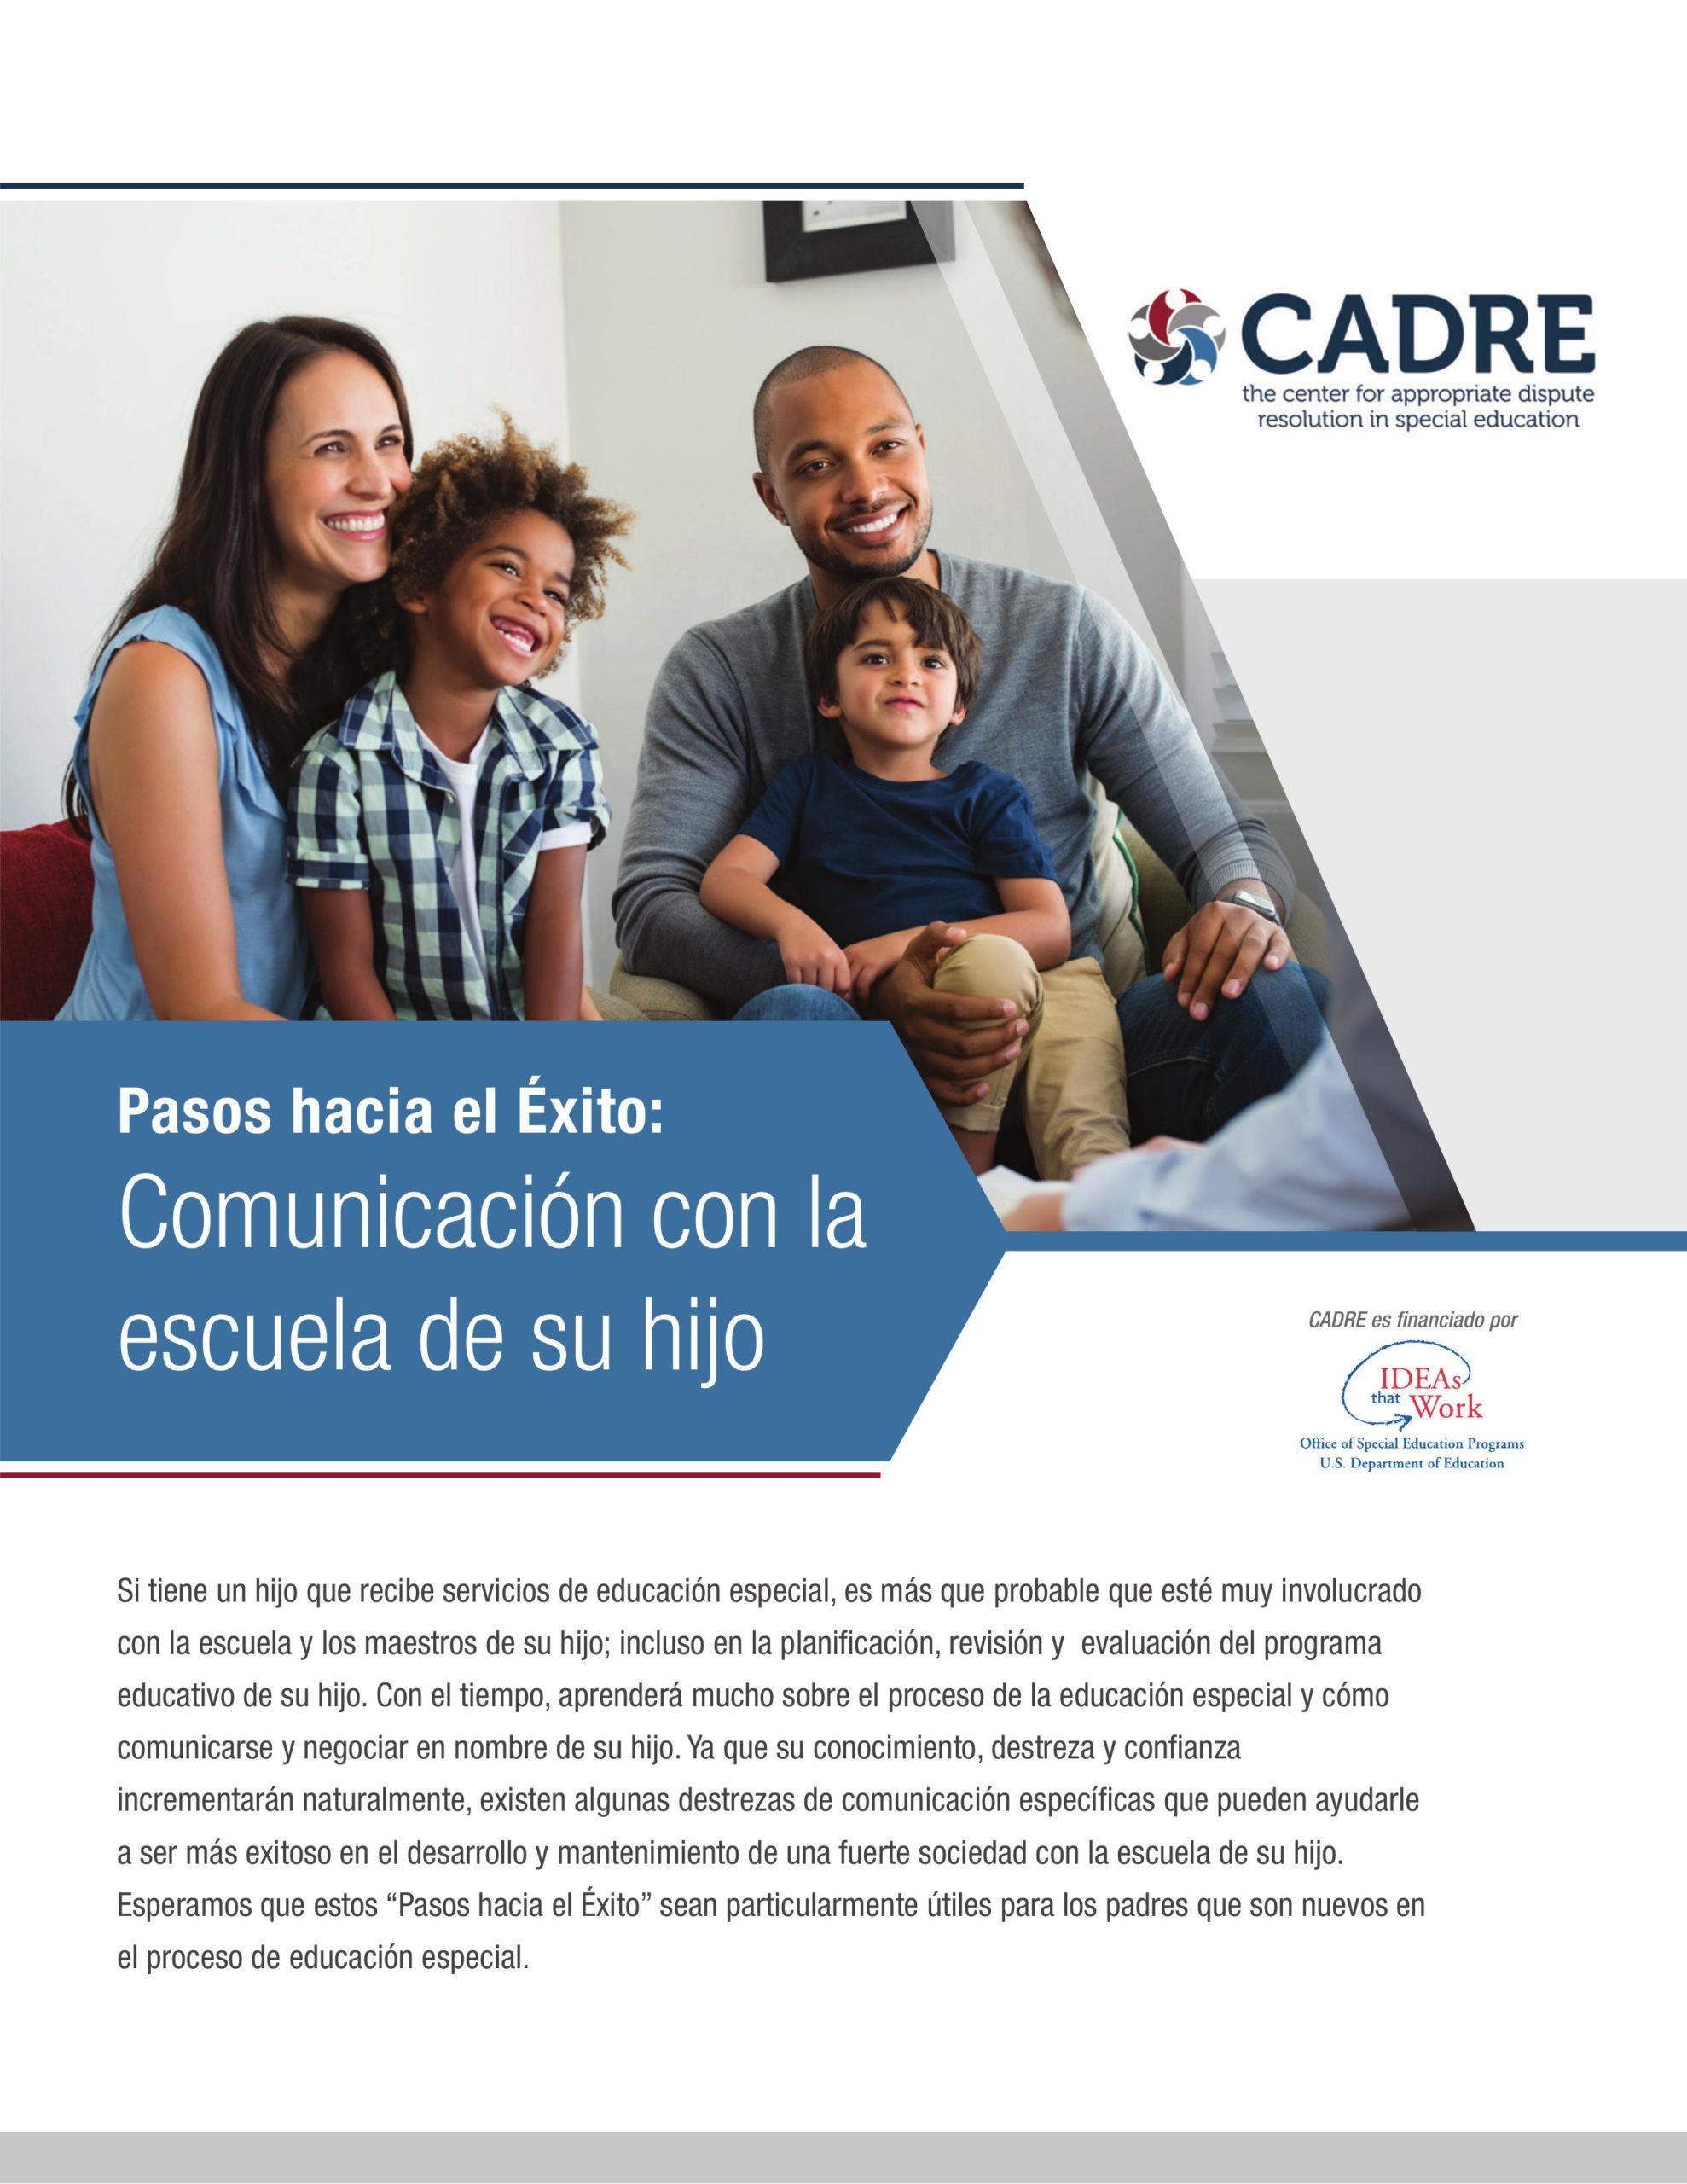 Première page du document "Steps to Success" en espagnol.